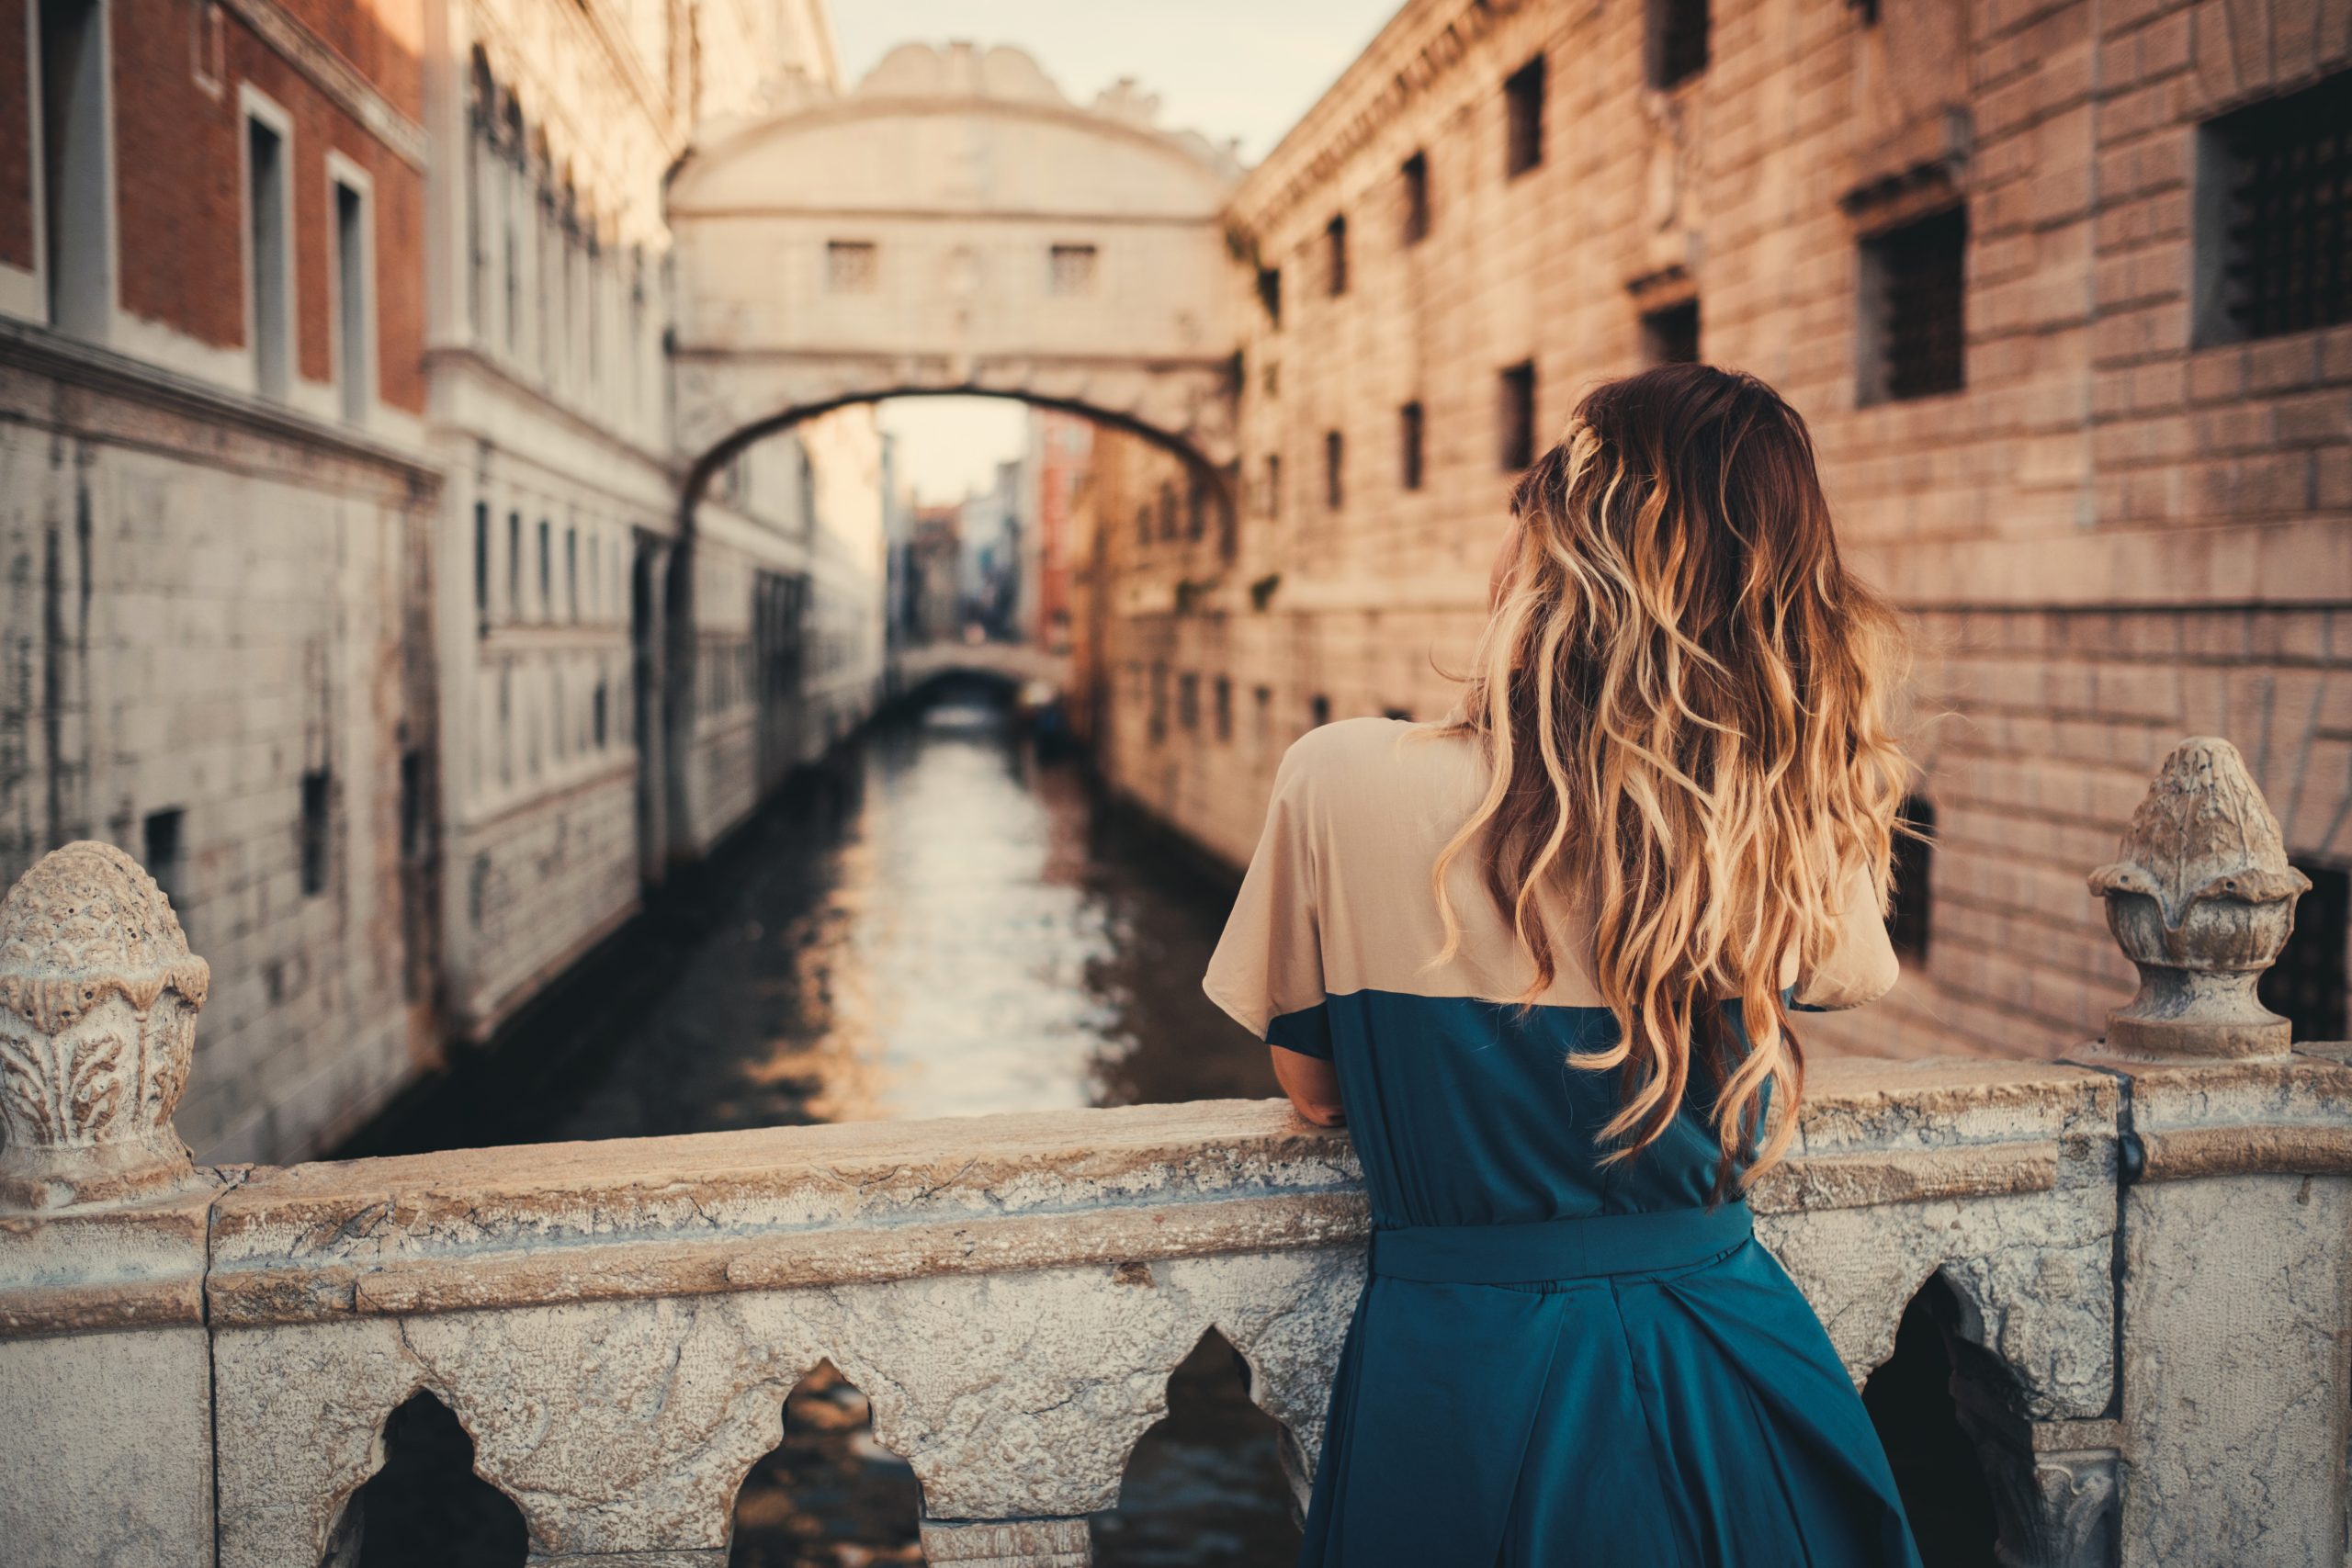 Beautiful woman on a bridge in Venice, Italy.